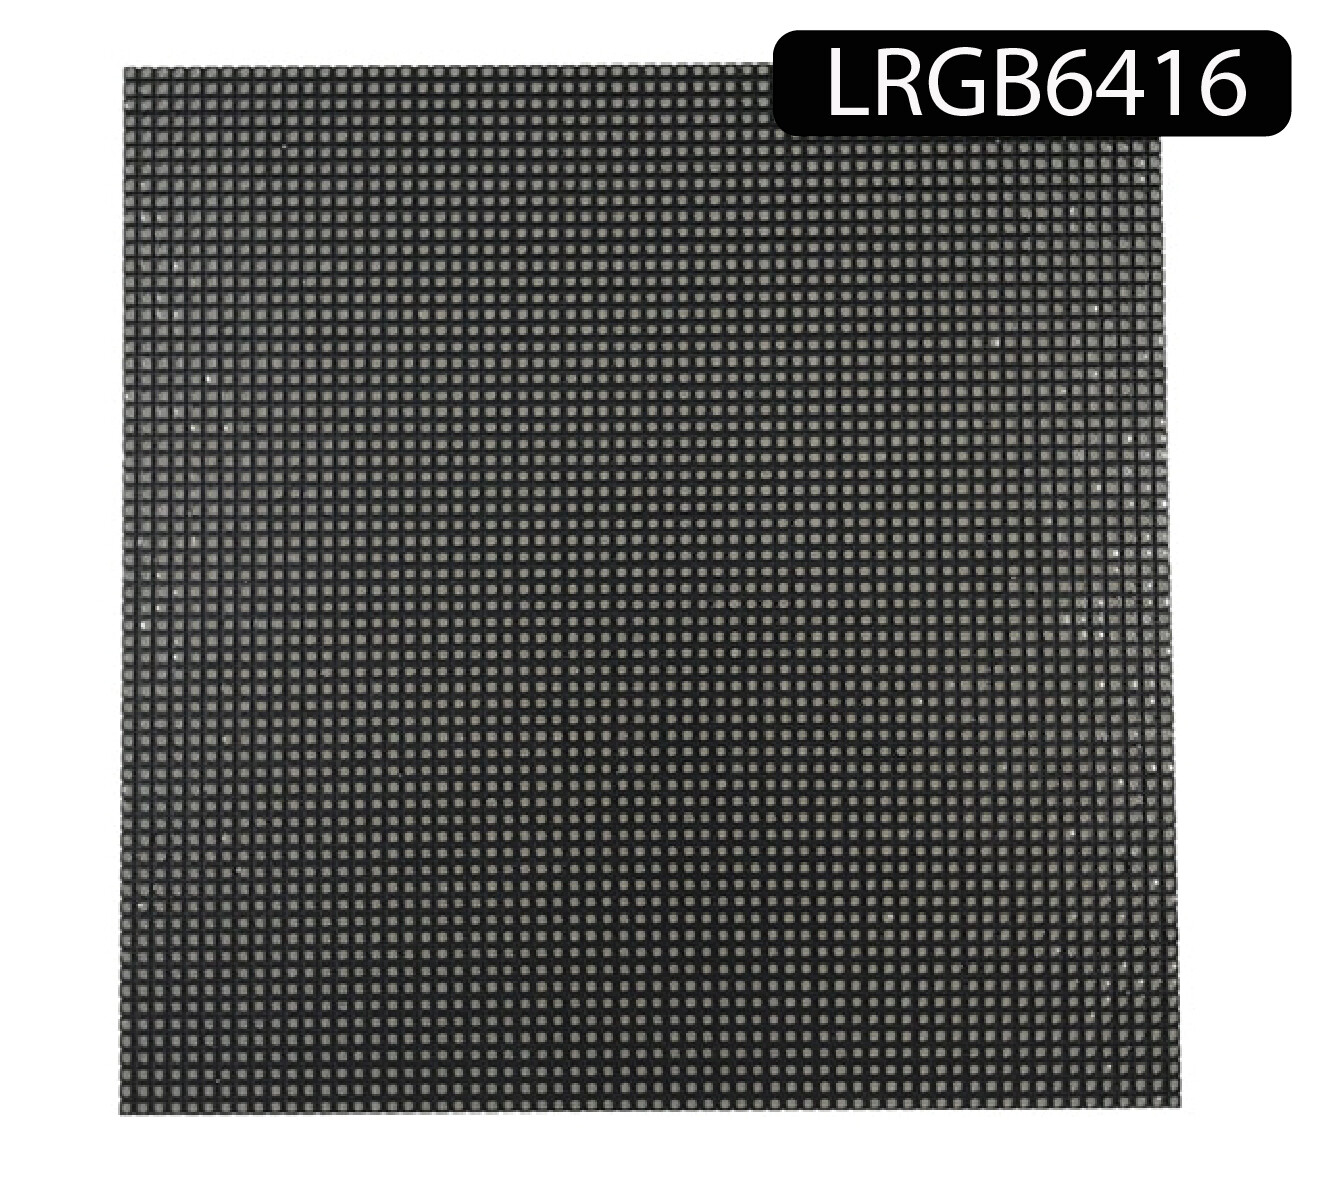 Matrice de LED RVB polychrome d'intérieur 
d'espacement 2.5 mm 160 x 160mm Résolution 64x64 pixels